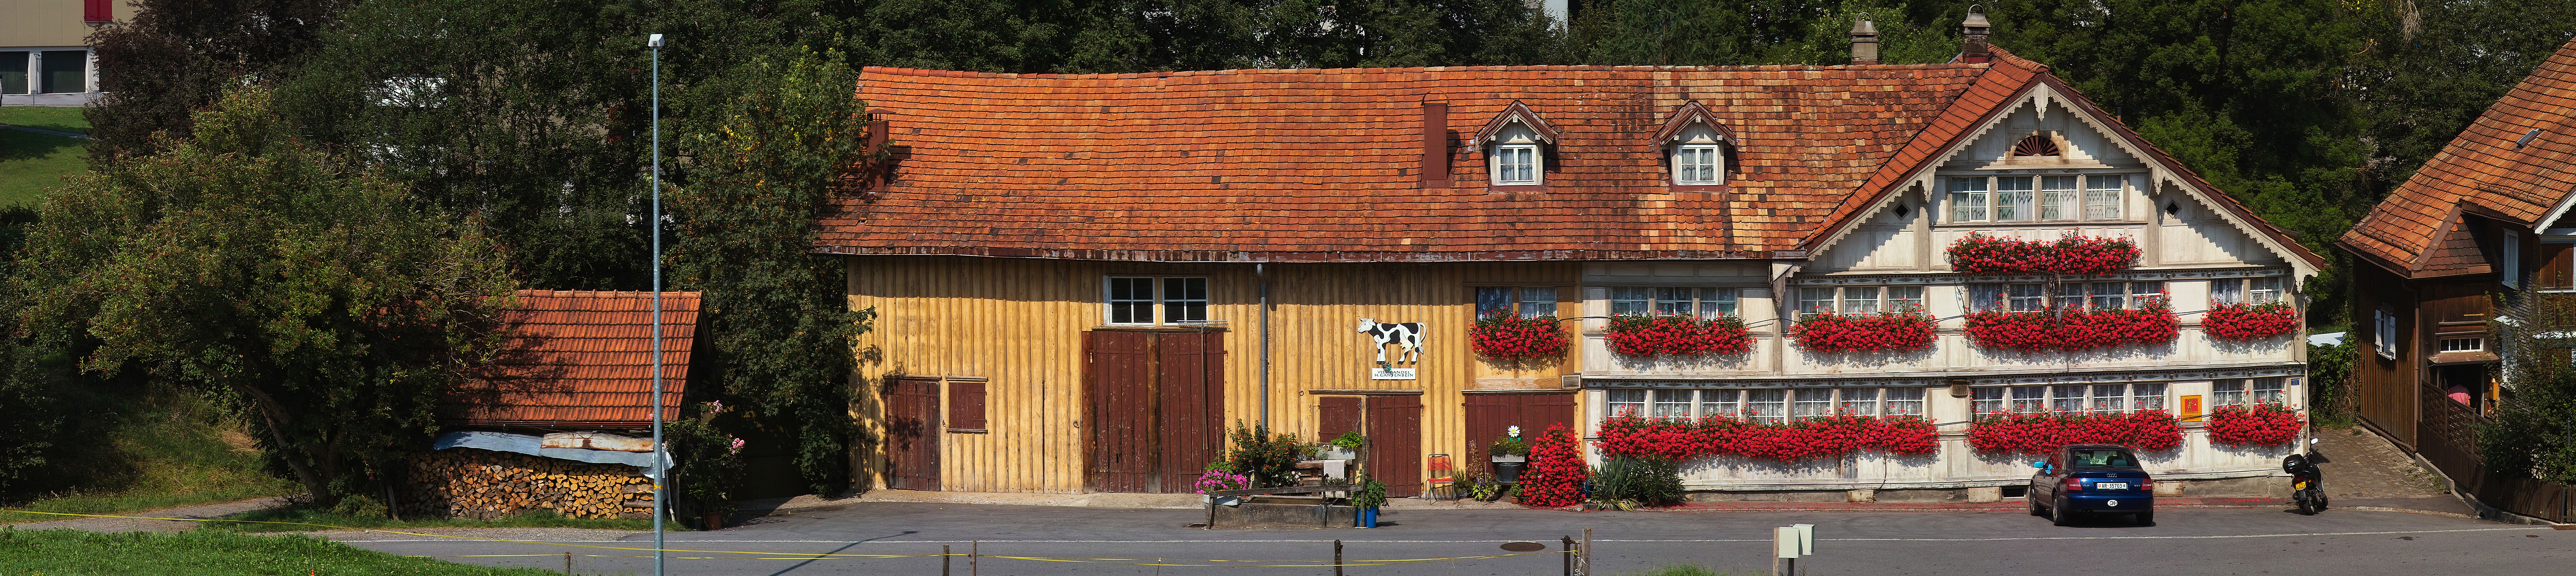 The Schlssli Inn and Cattle Trading Barn (Laurence Matson)